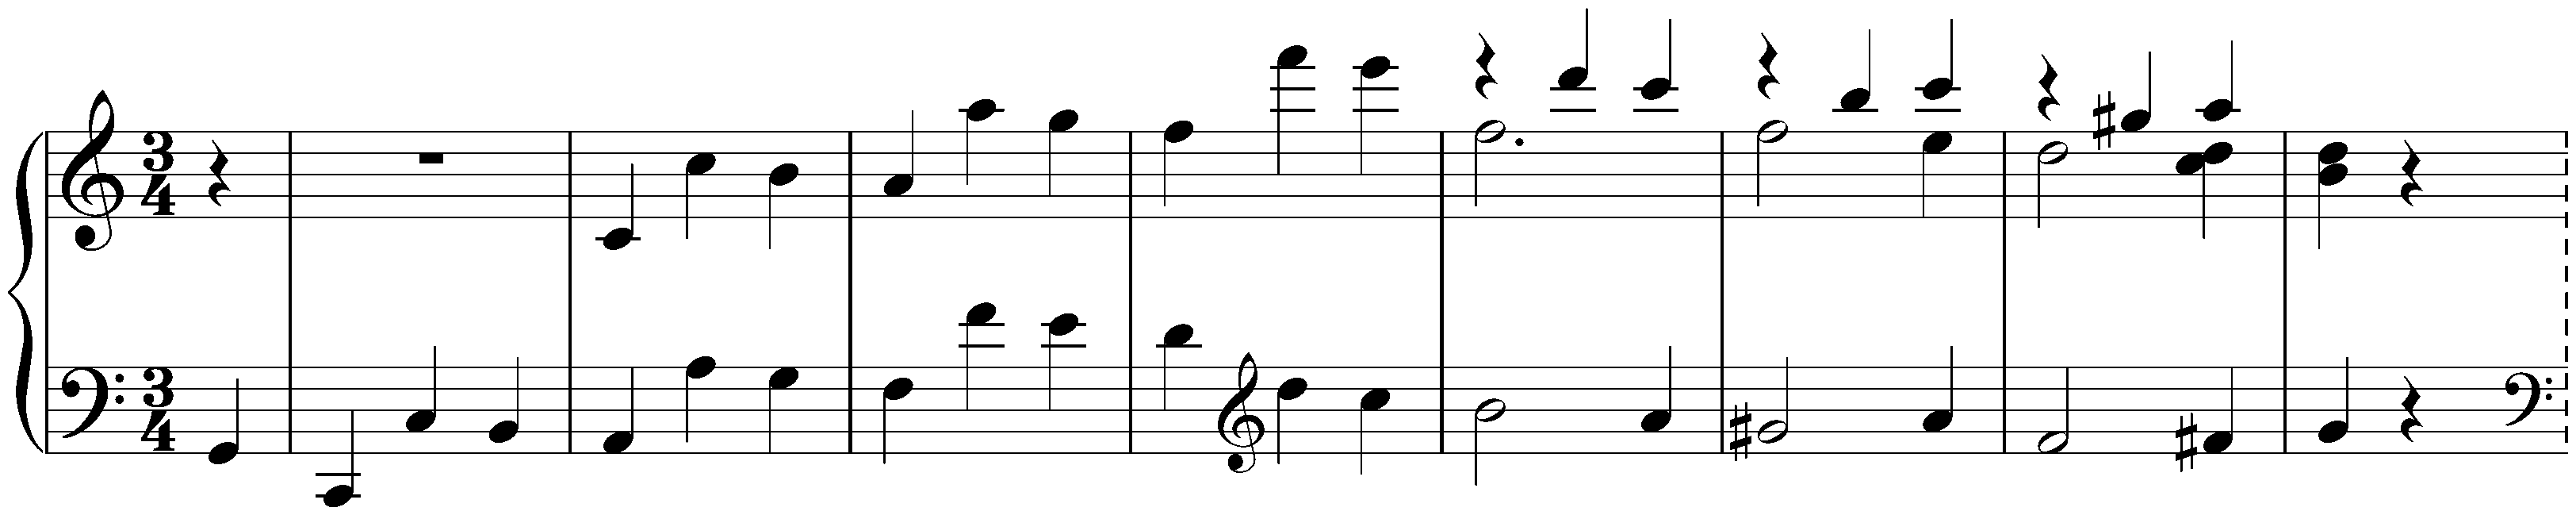 Allegretto in C minor, Hess 66